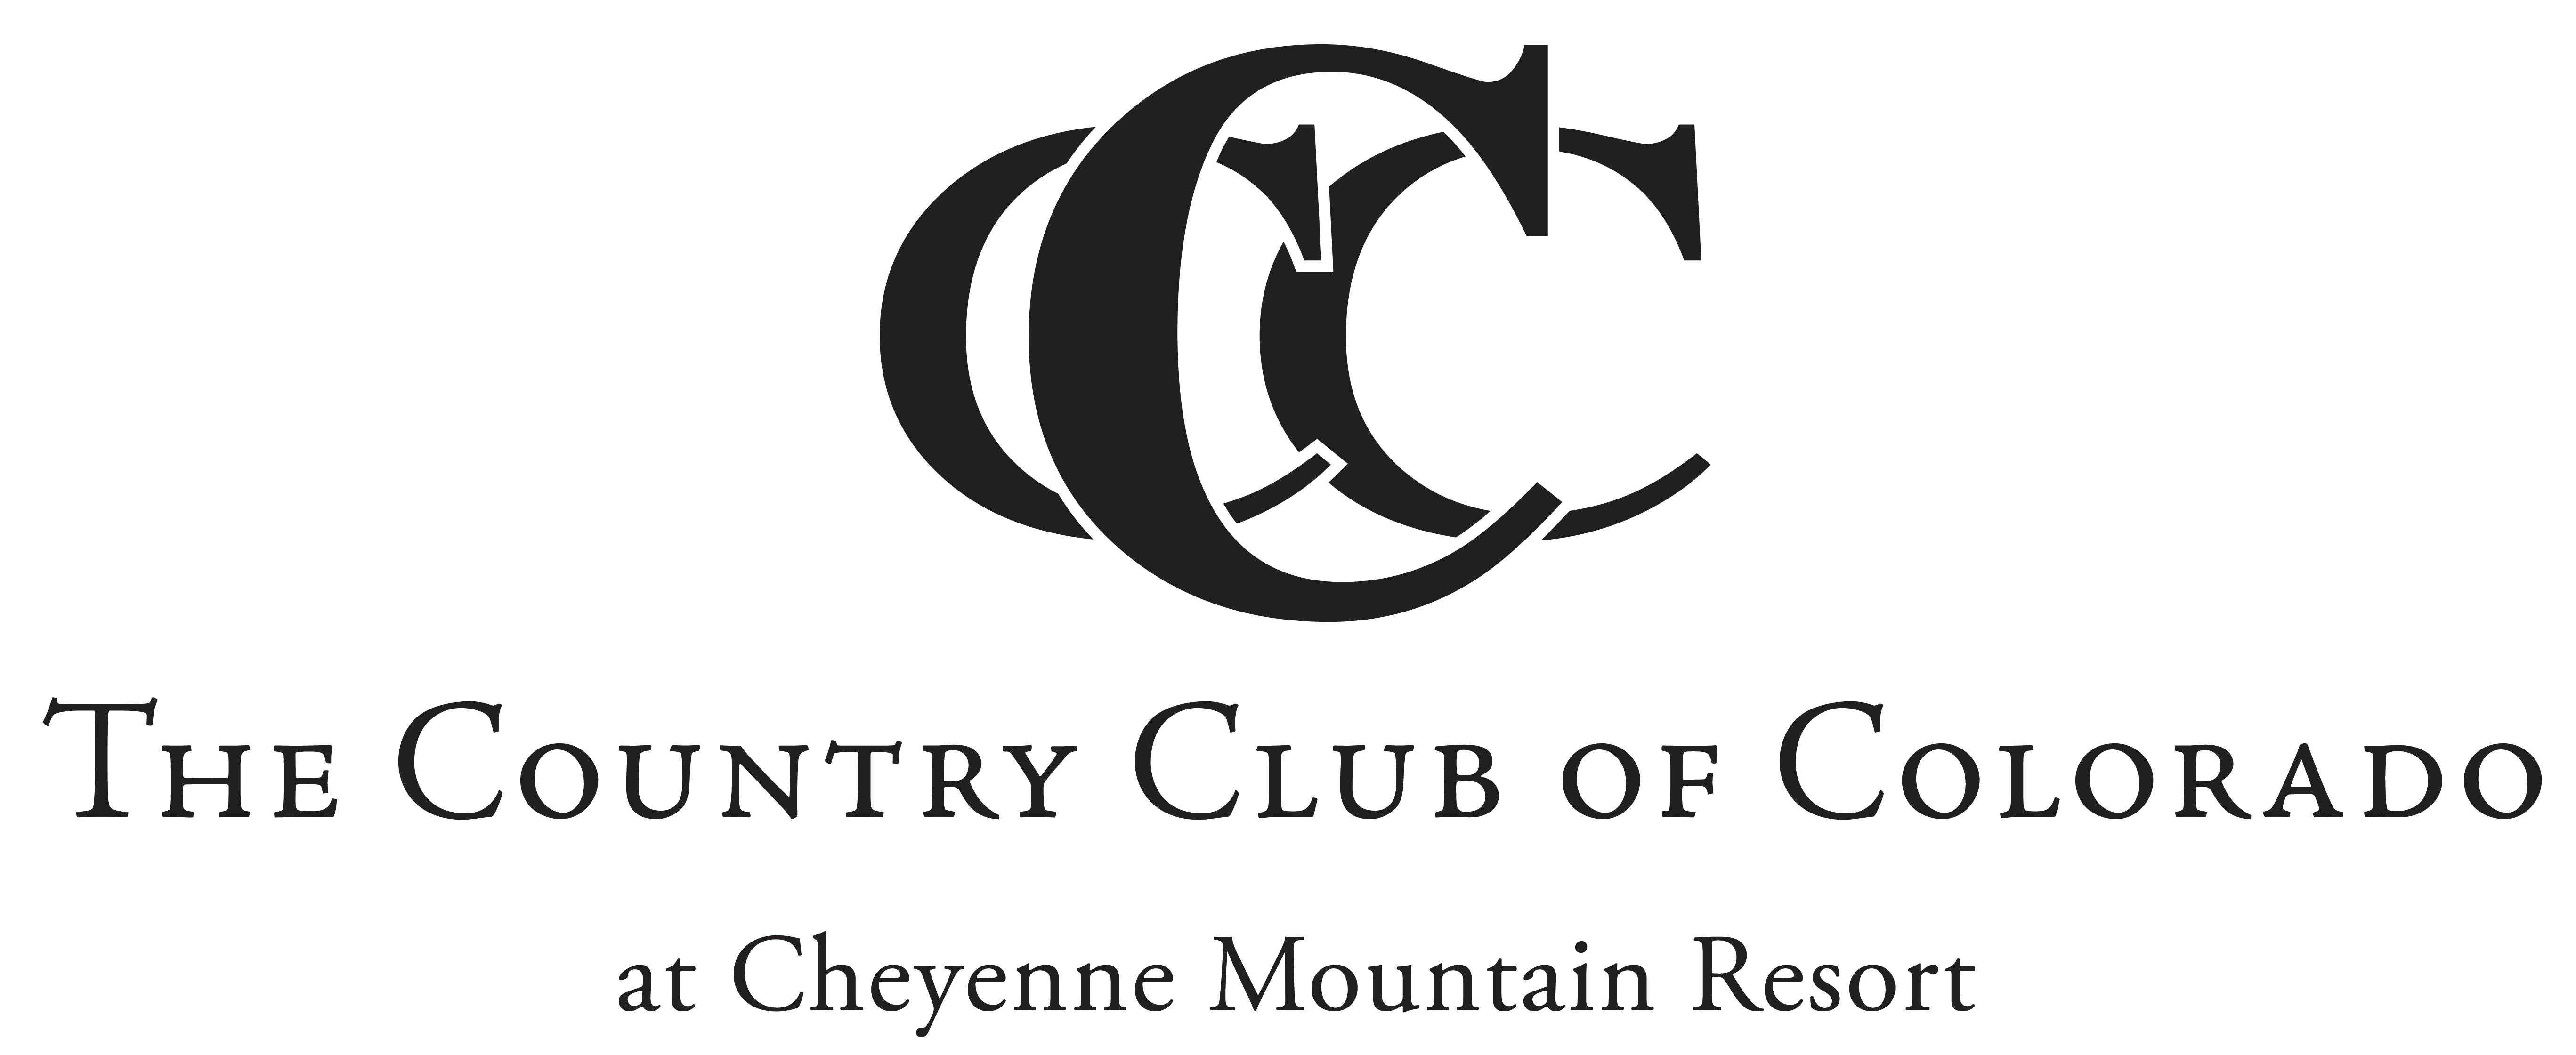 The Country Club of Colorado logo